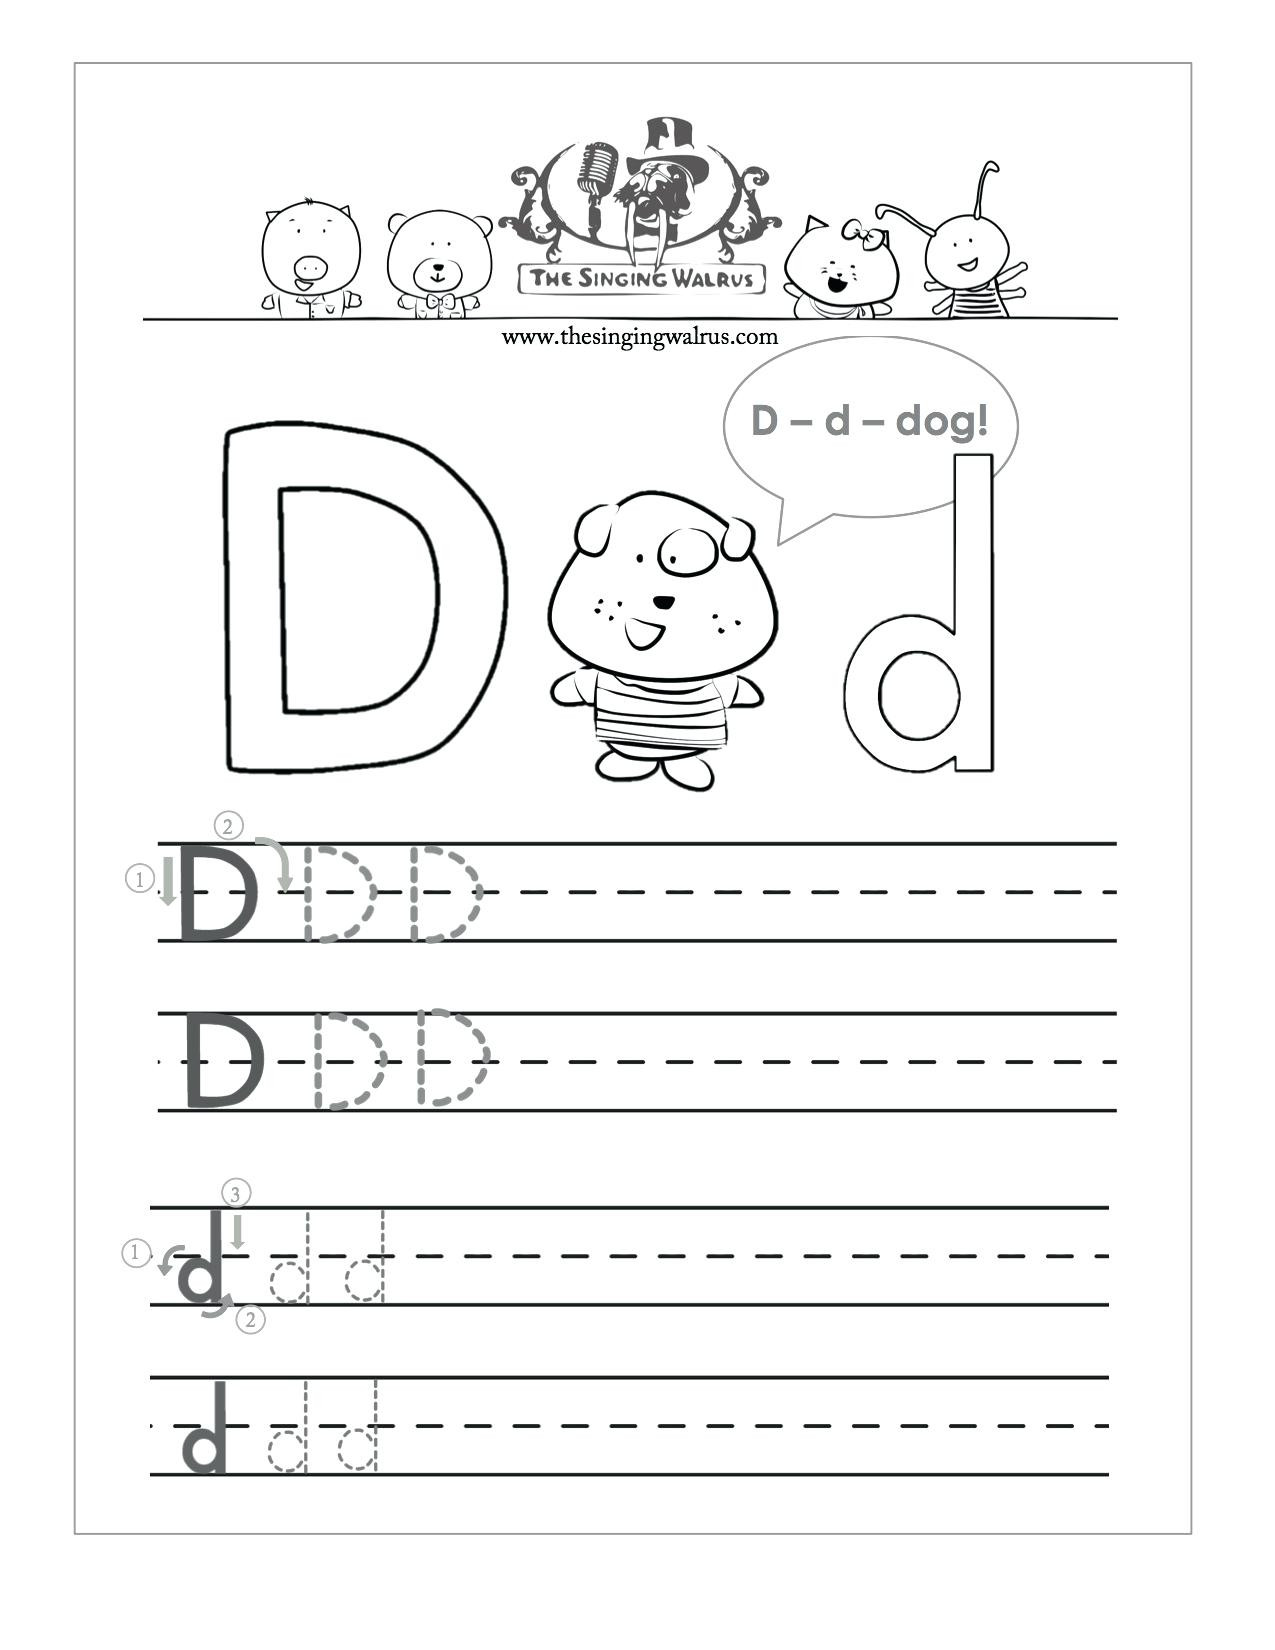 Letter D Worksheet for Preschool Letter D Worksheets for Free Download Letter D Worksheets